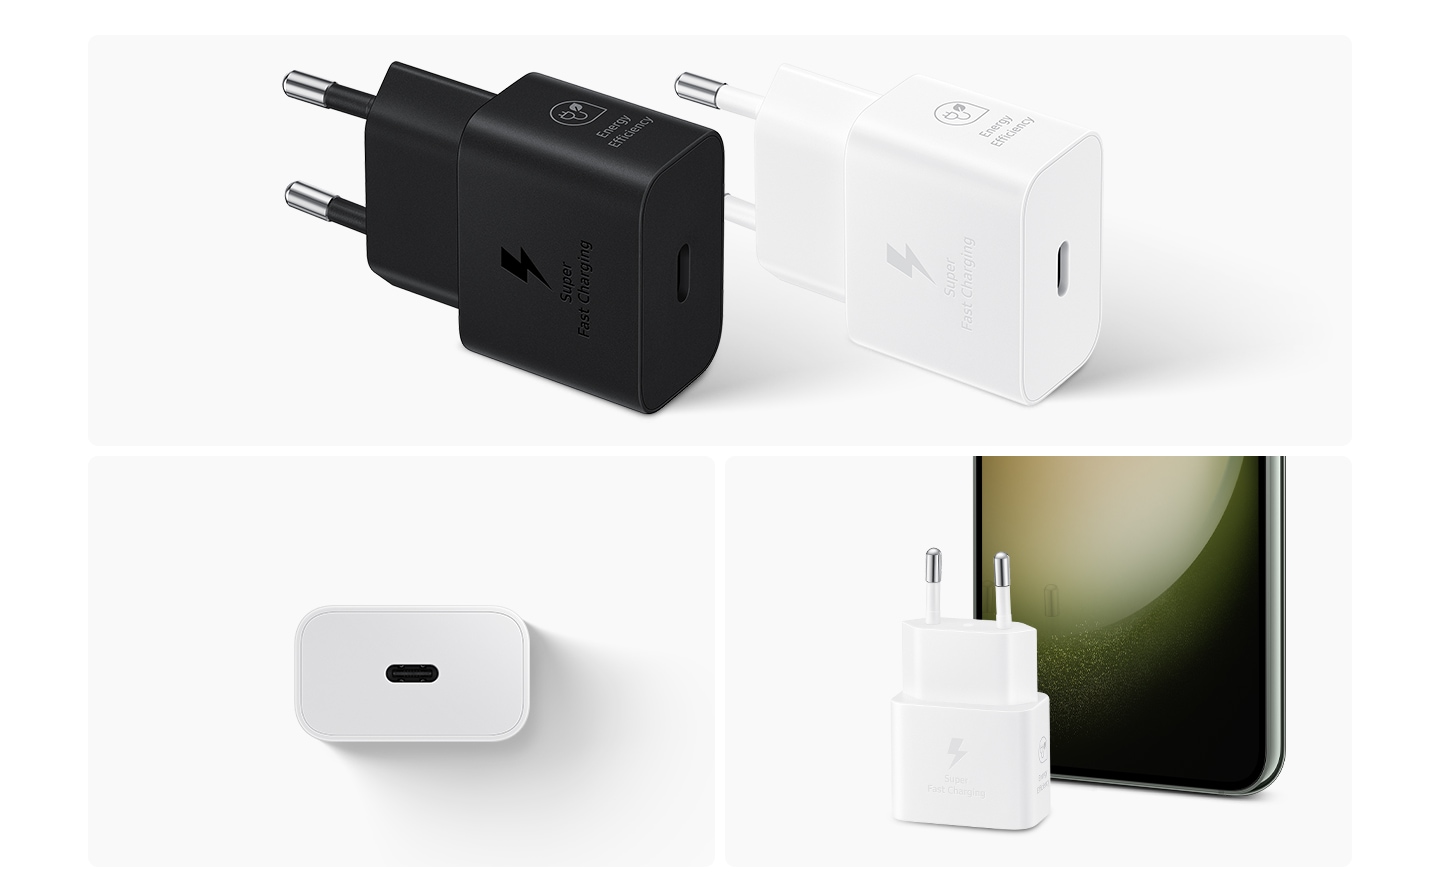 En la parte superior se muestran dos adaptadores de corriente, en blanco y negro.  En la parte inferior izquierda, un adaptador de corriente blanco muestra el lado con el puerto USB-C.  En la parte inferior derecha, se coloca un adaptador de corriente blanco frente a un teléfono inteligente Galaxy.